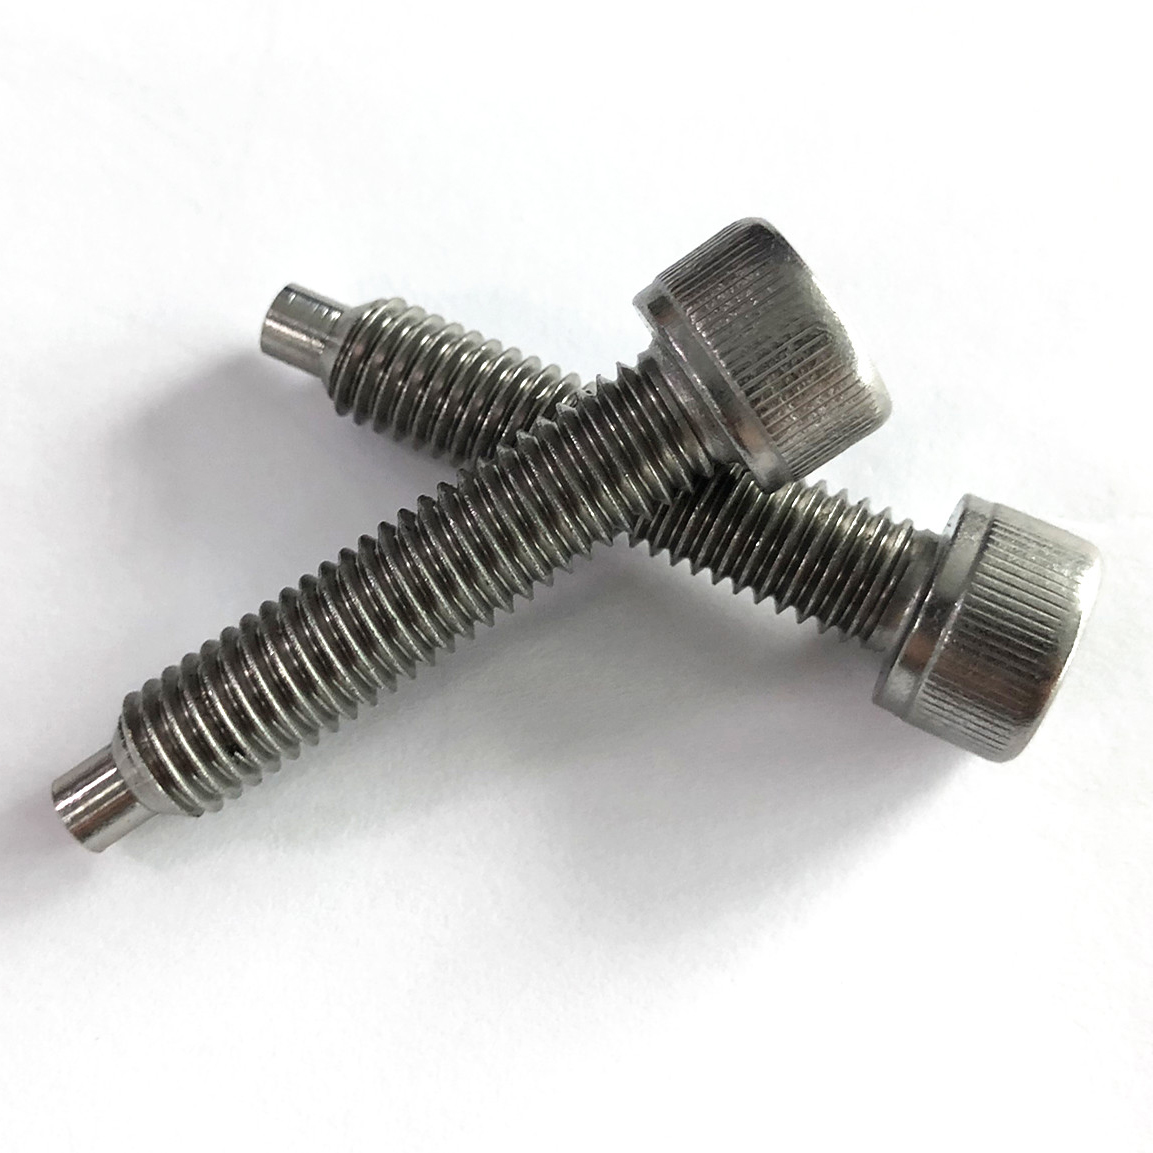 Recessed hex screws